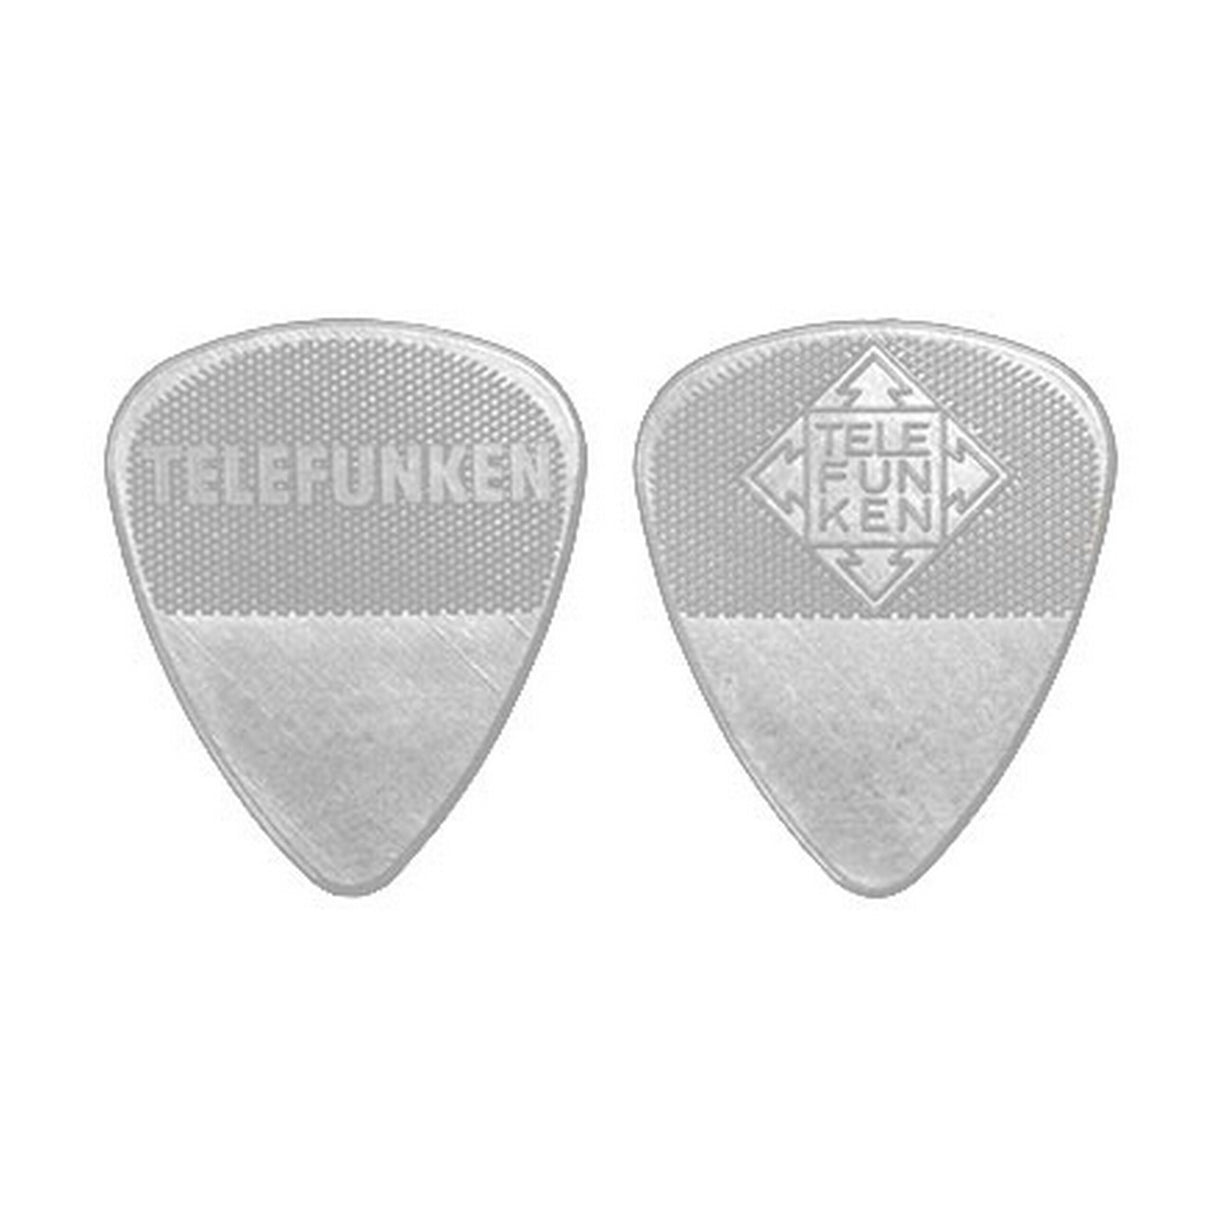 Telefunken 1mm Thin Diamond Delrin Guitar Picks, White, 6-Pack